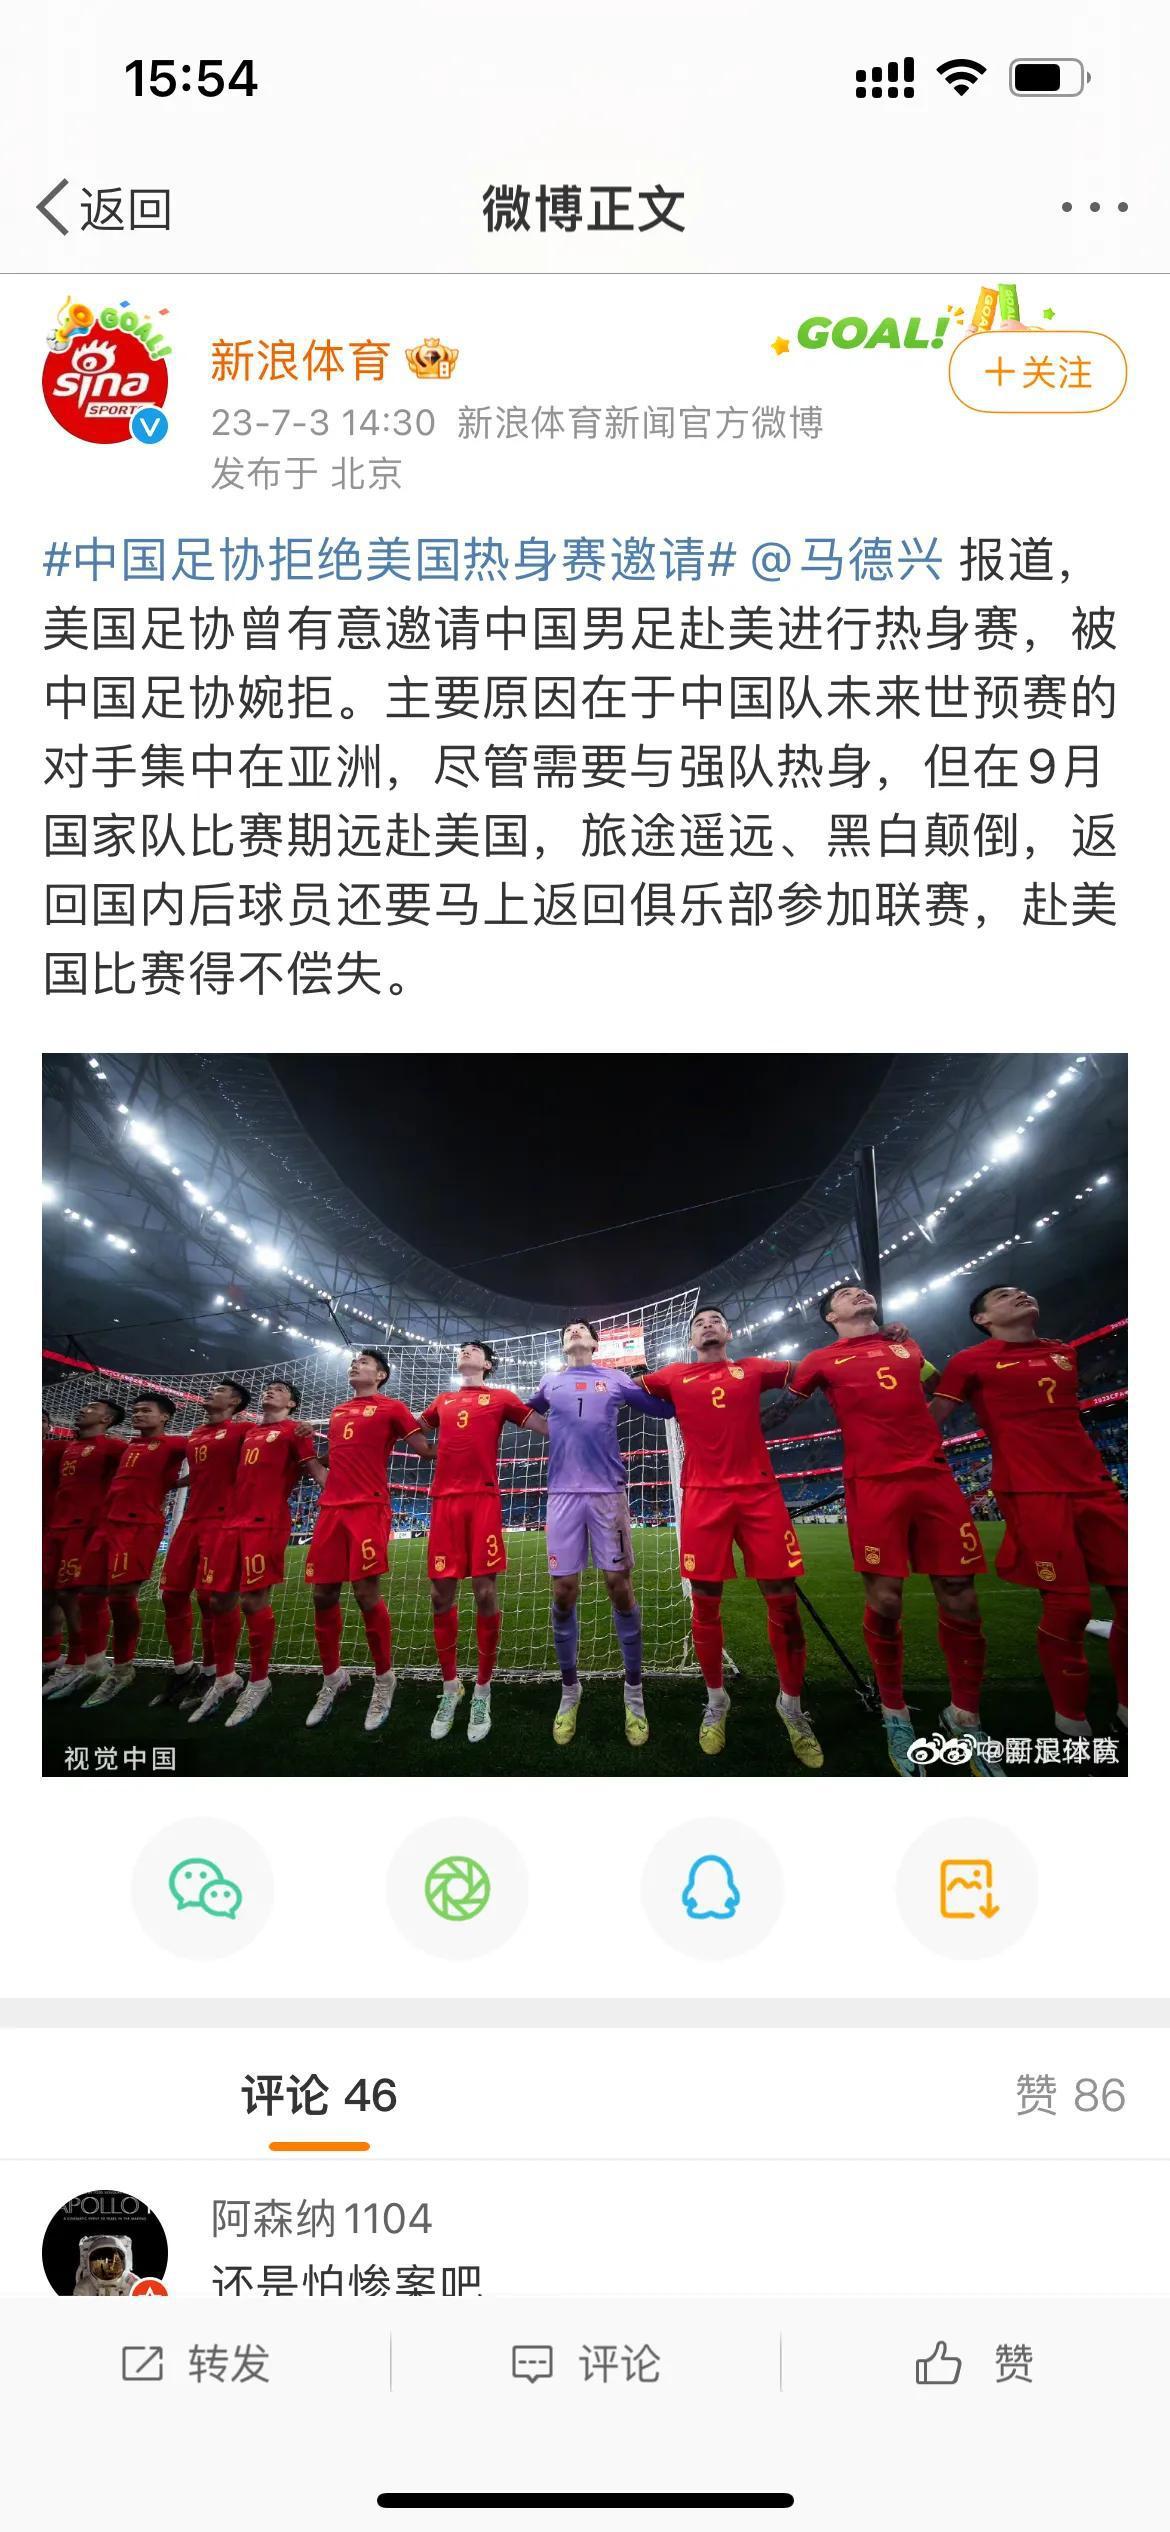 尴尬！中国足协硬气拒绝美国男足热身赛邀请，原因荒唐无语，球迷大实话一针见血。

